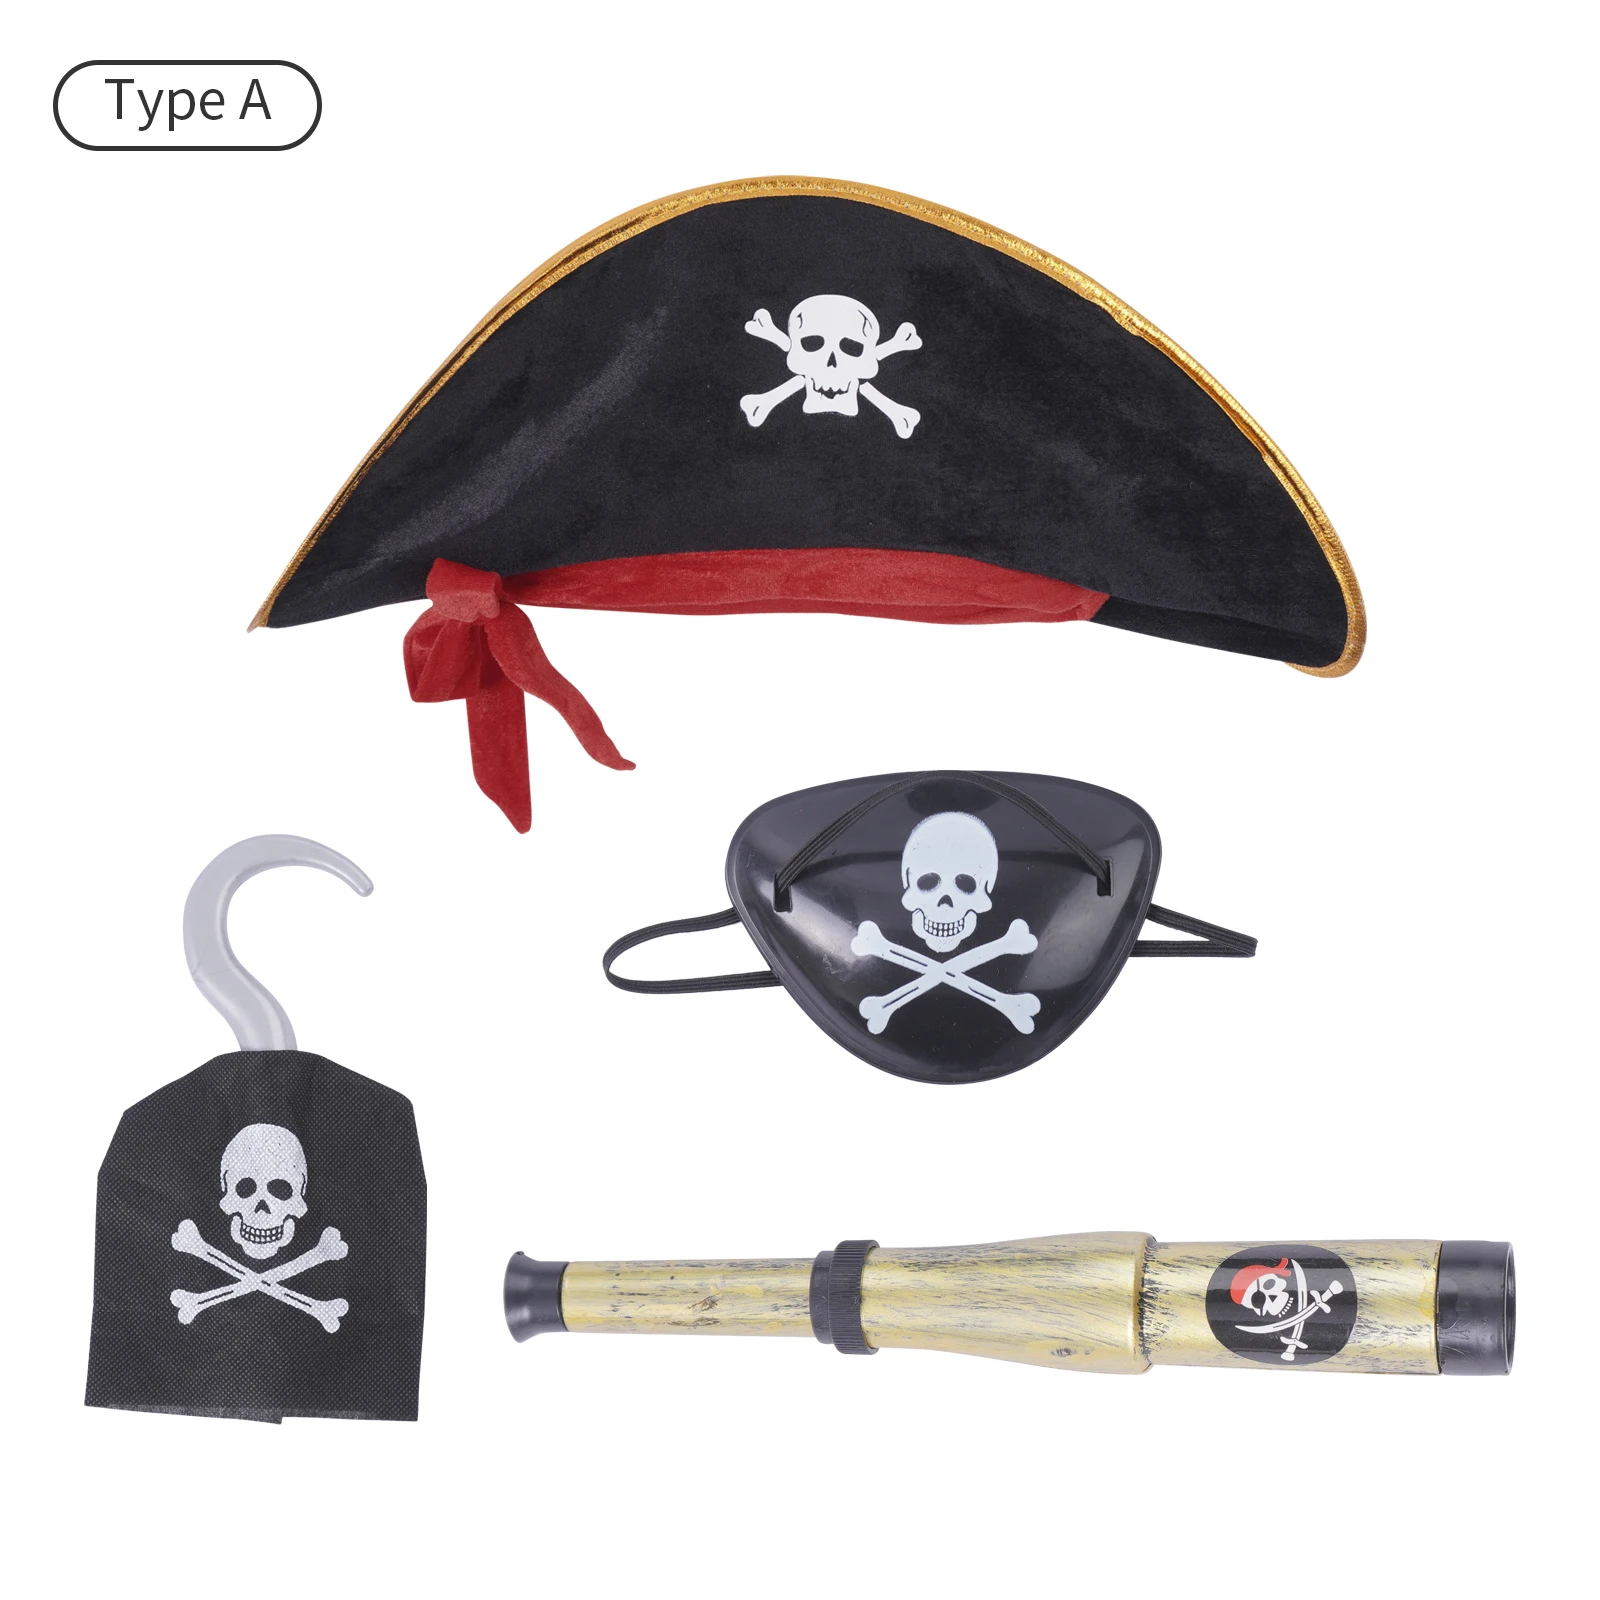 Sombrero de pirata con estampado de Calavera, sombrero de capitán caribeño, accesorio de disfraz de pirata para Halloween, Parche de pirata para ojo telescópico con gancho